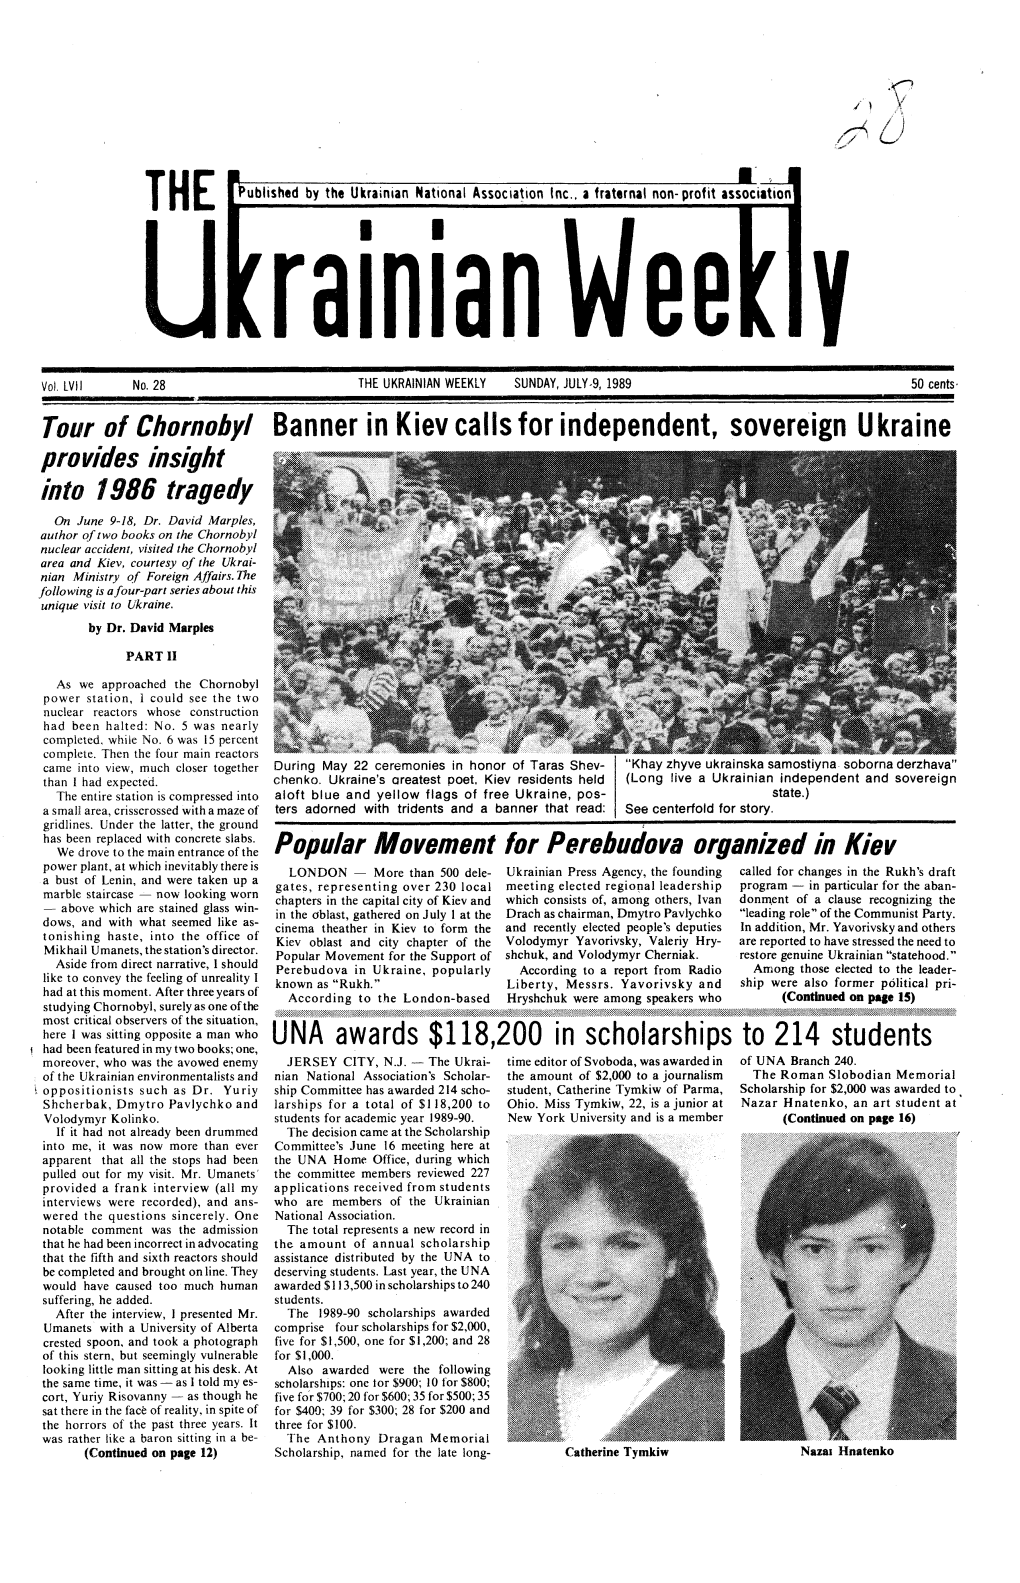 The Ukrainian Weekly 1989